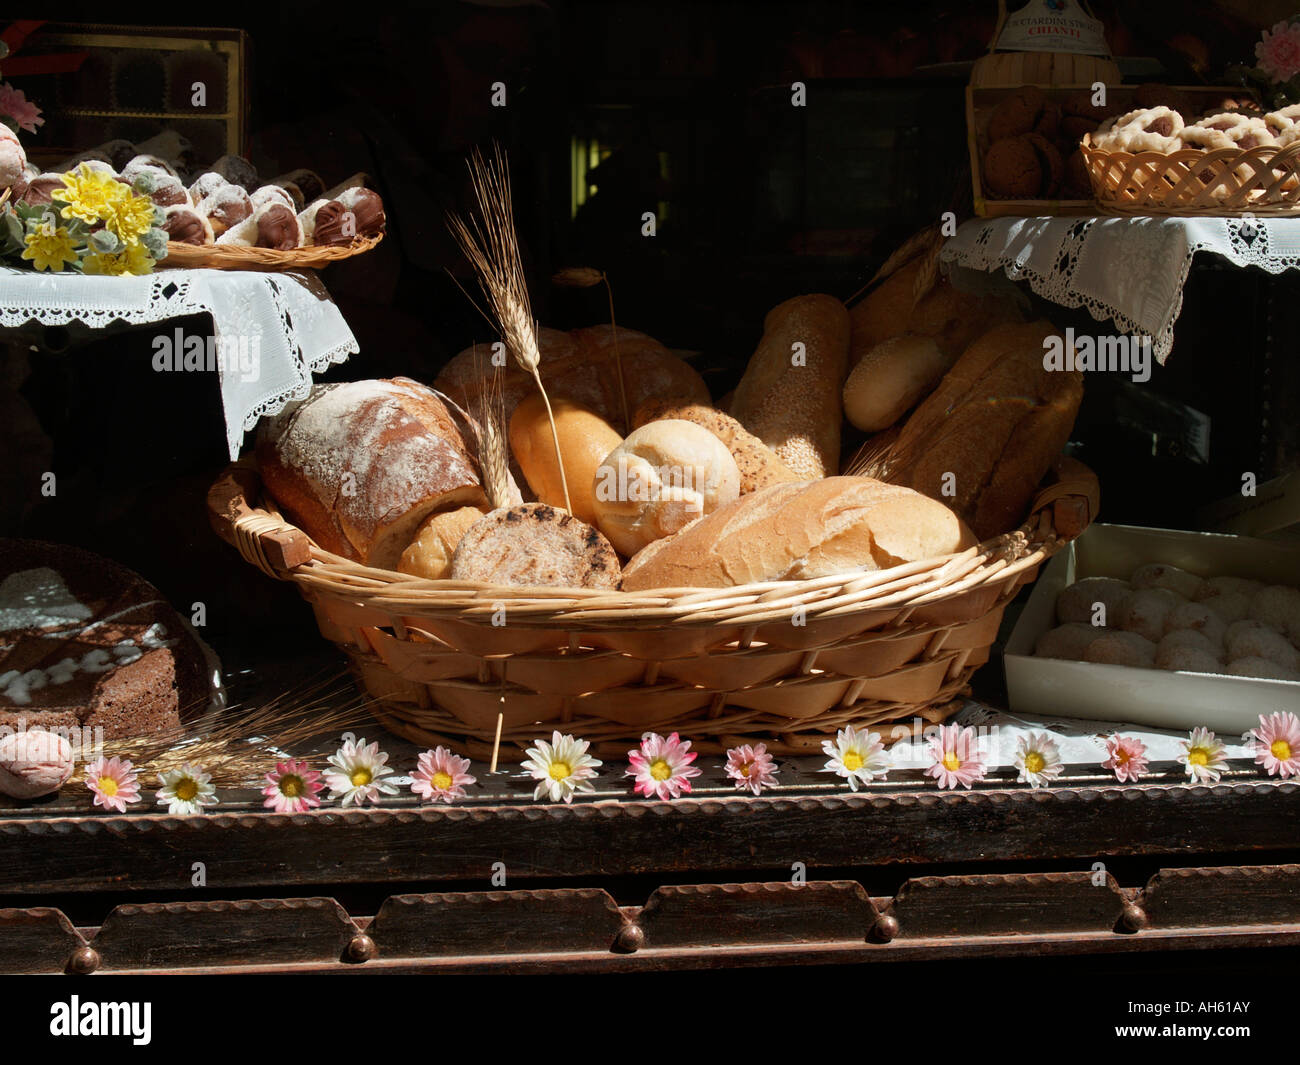 Du pain frais dans le panier sur l'affichage en vitrine boulangerie Capri Banque D'Images